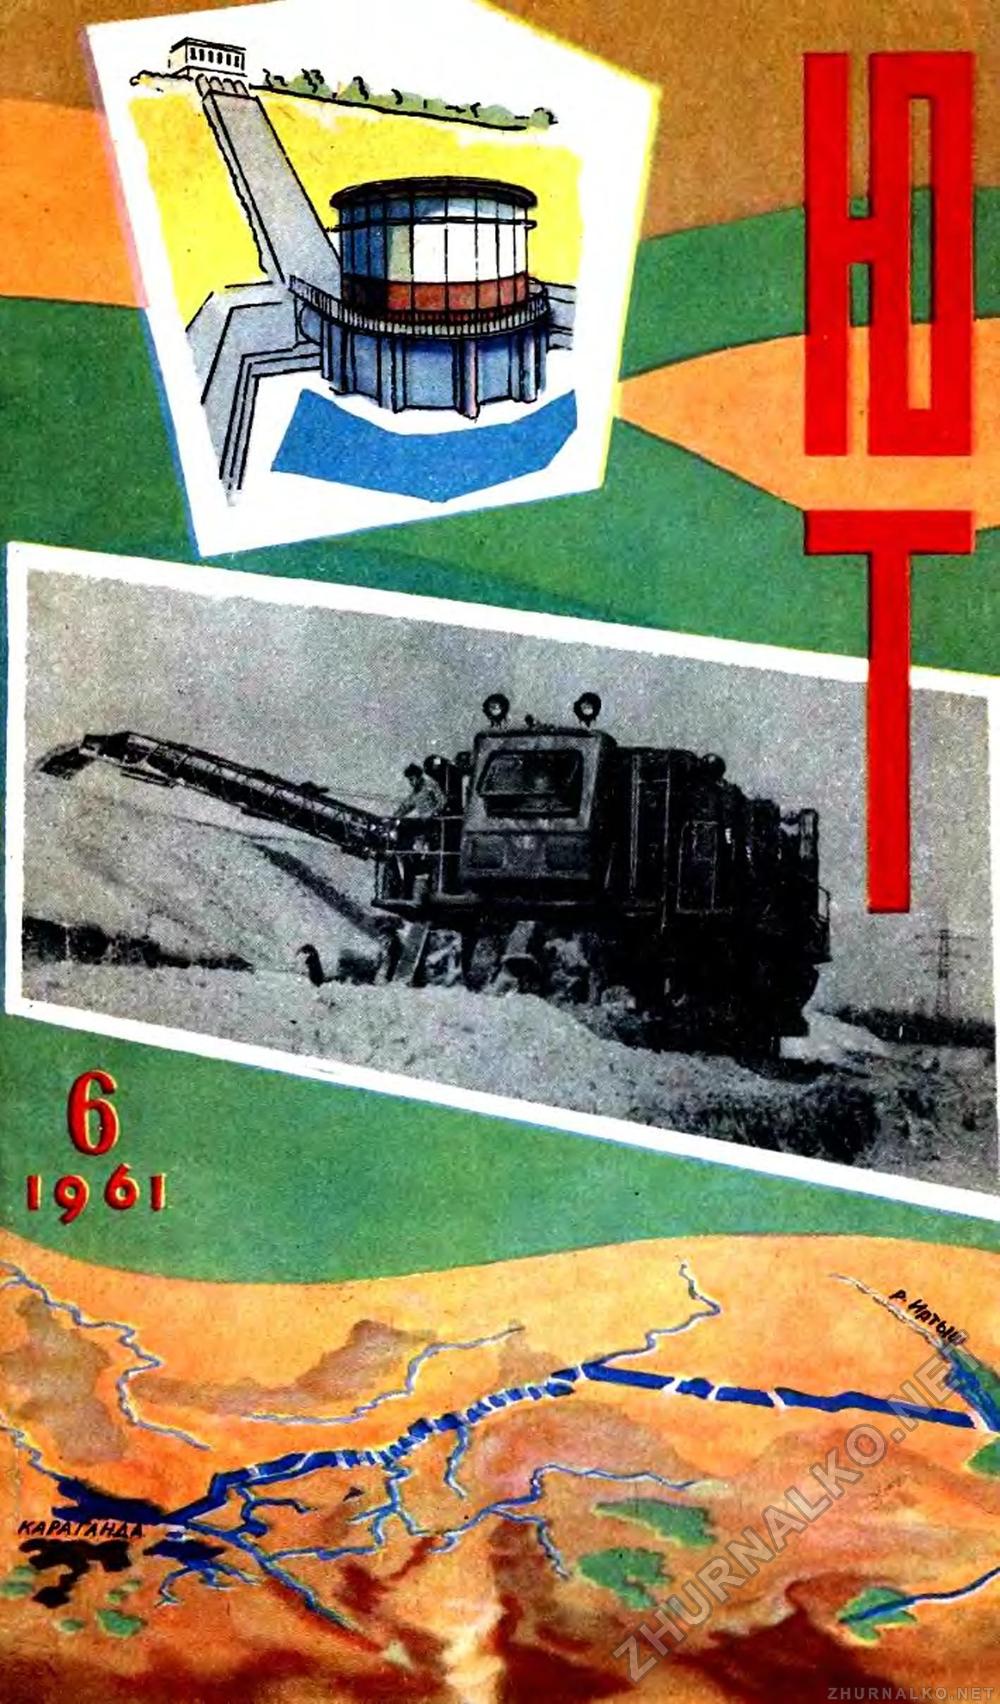   1961-06,  1